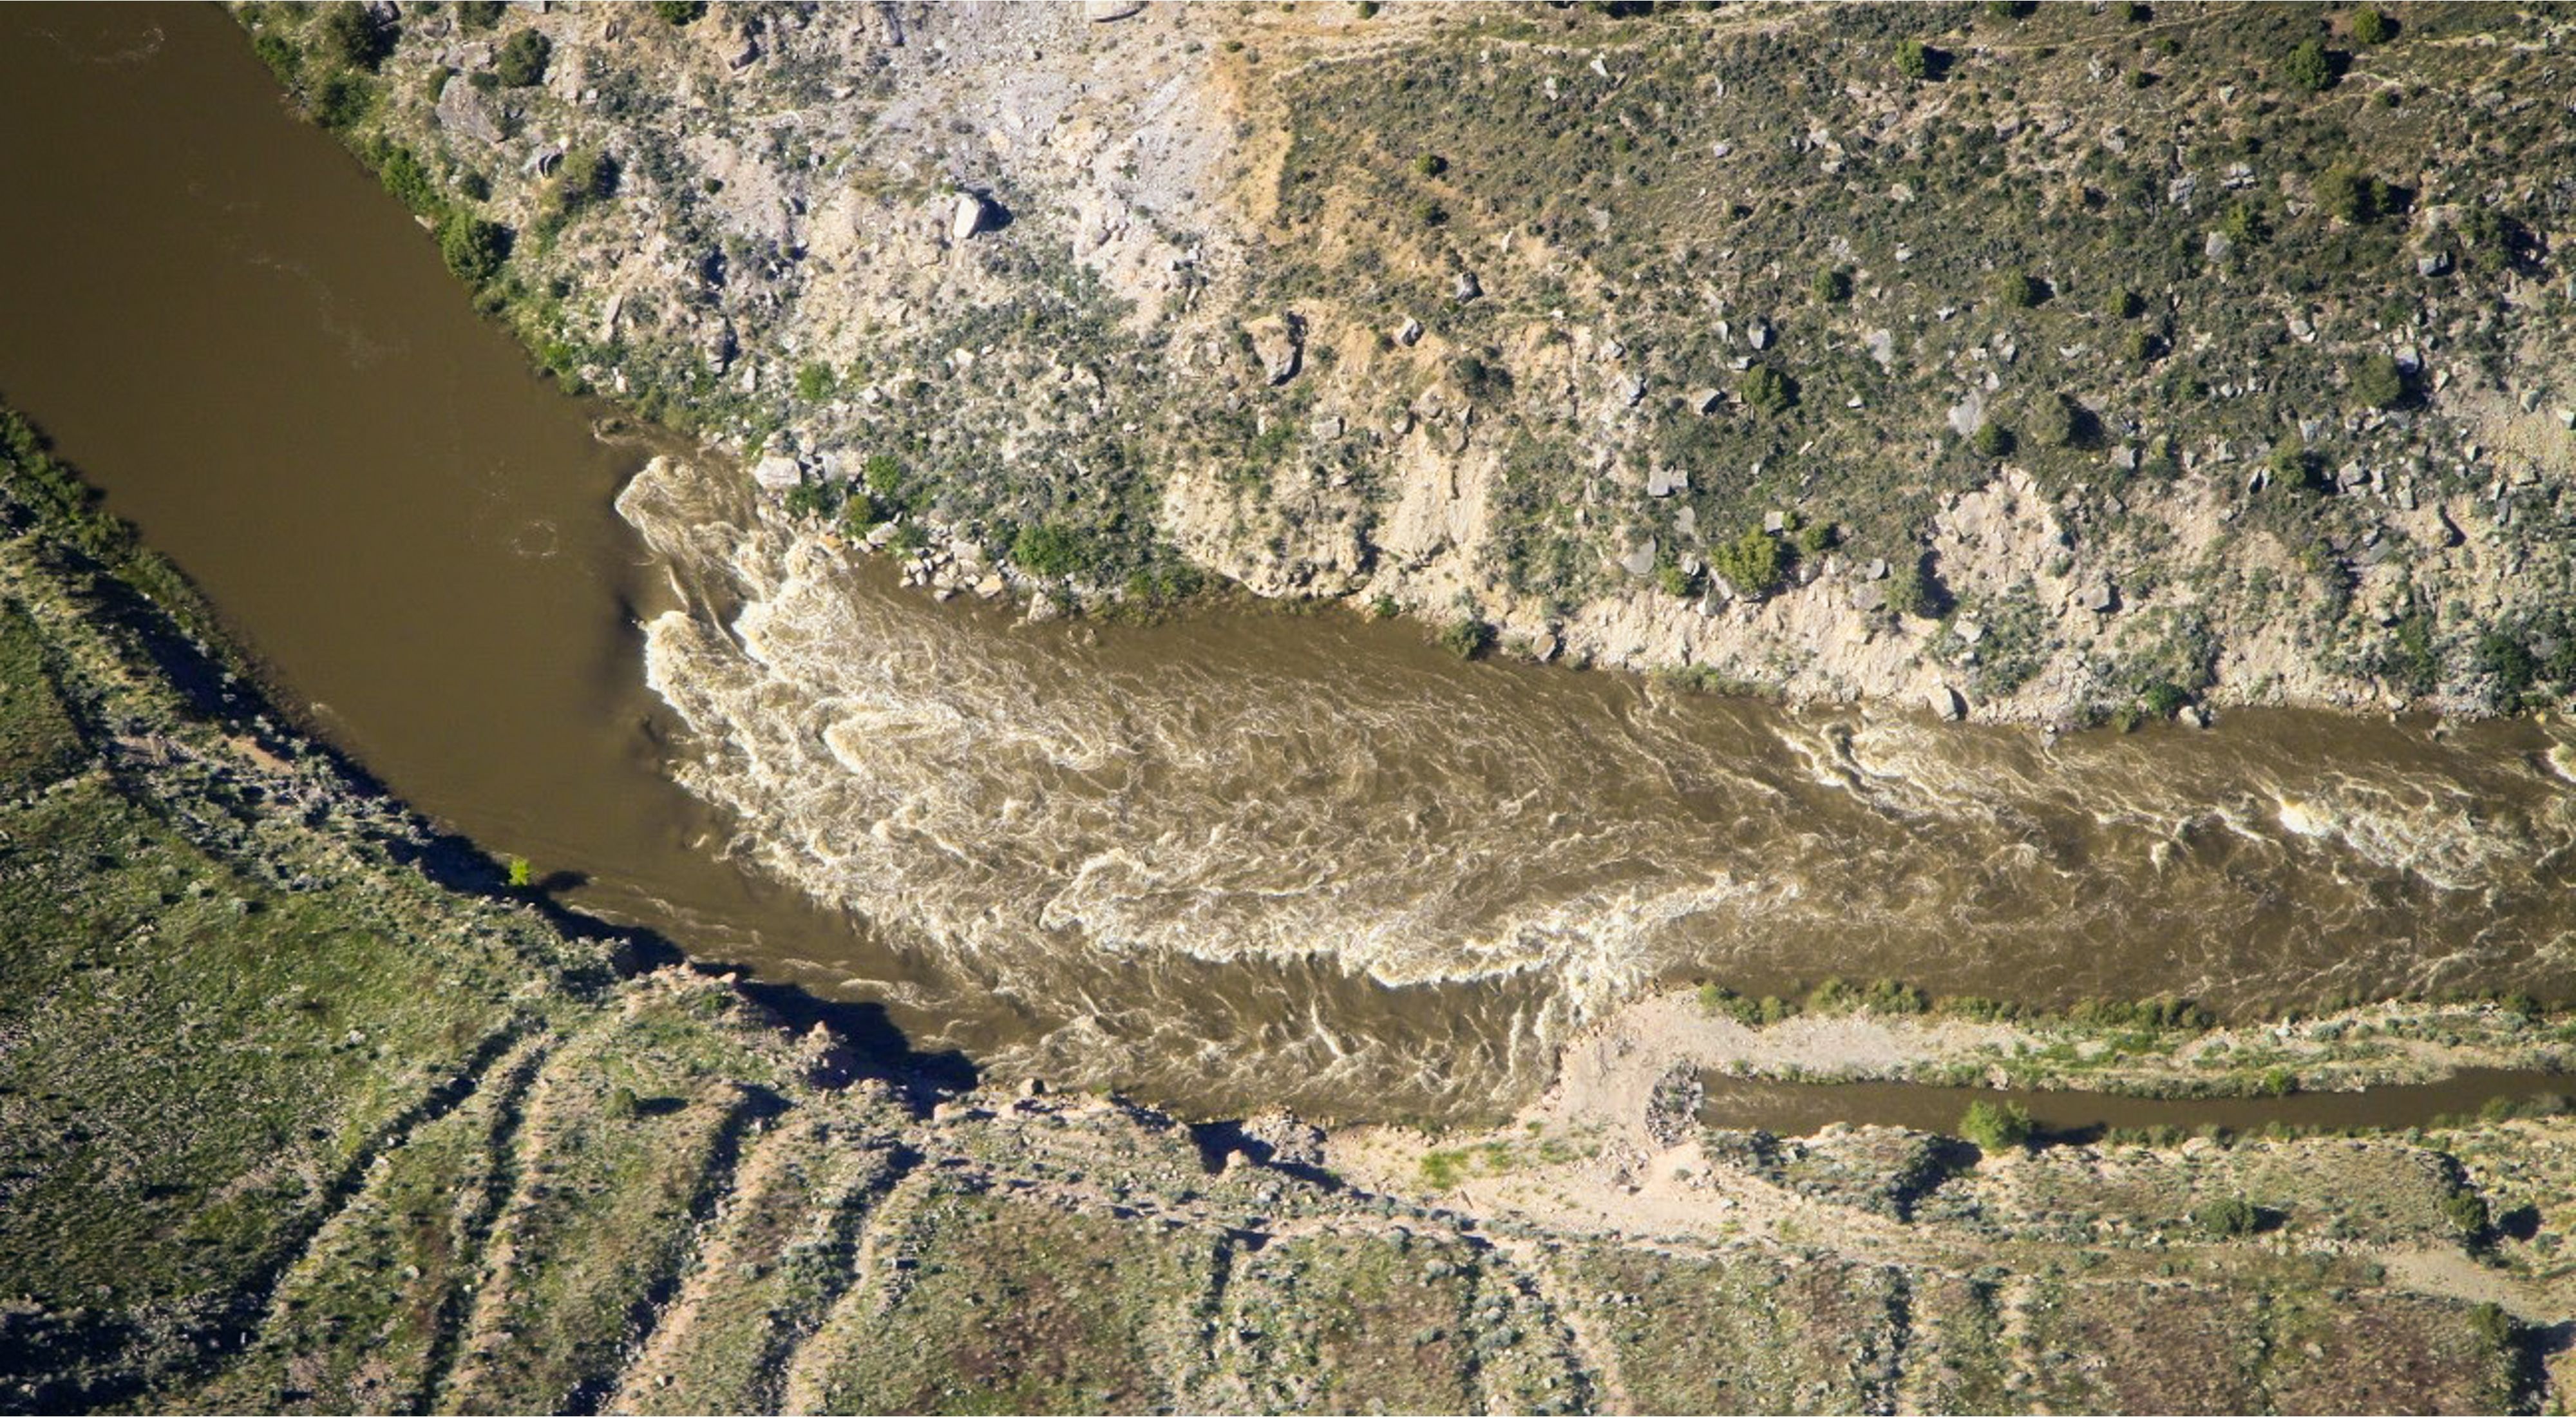 An aerial shot of a river flowing between grass hills.